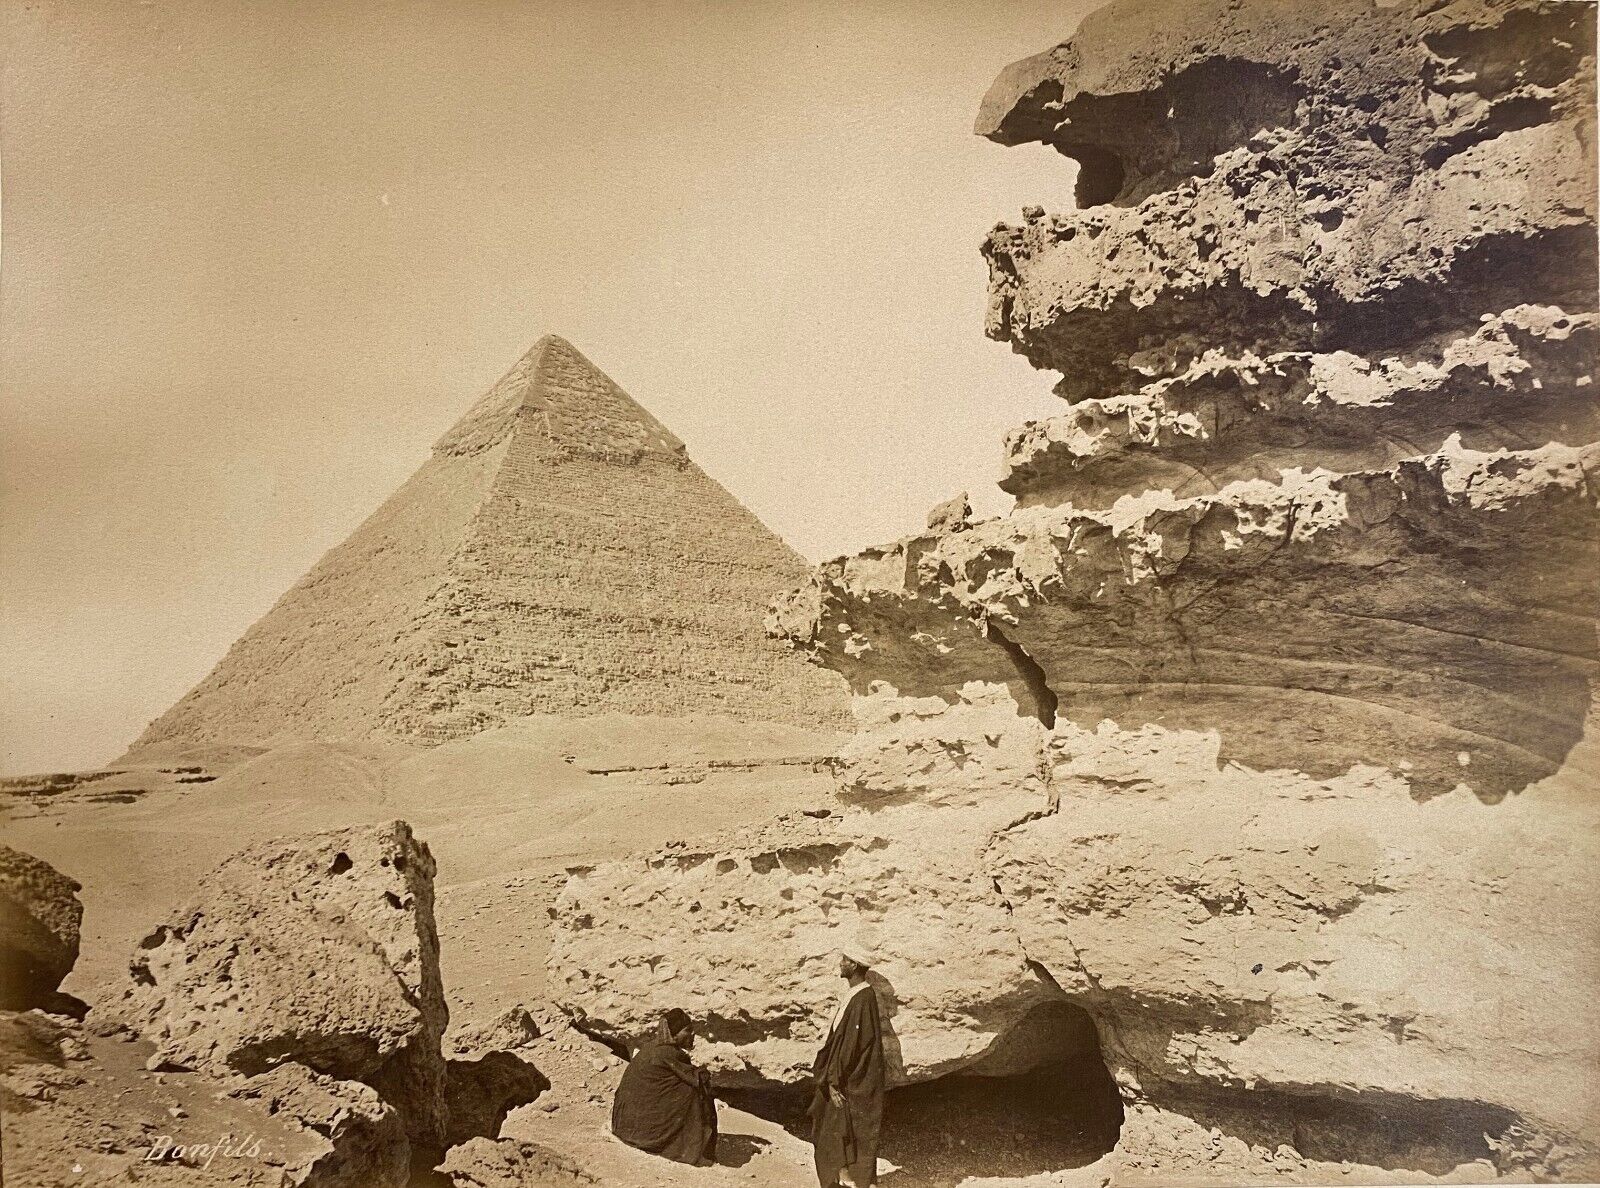 Felix BONFILS Pyramid of Khephren signed c.1870 vintage albumin print photo